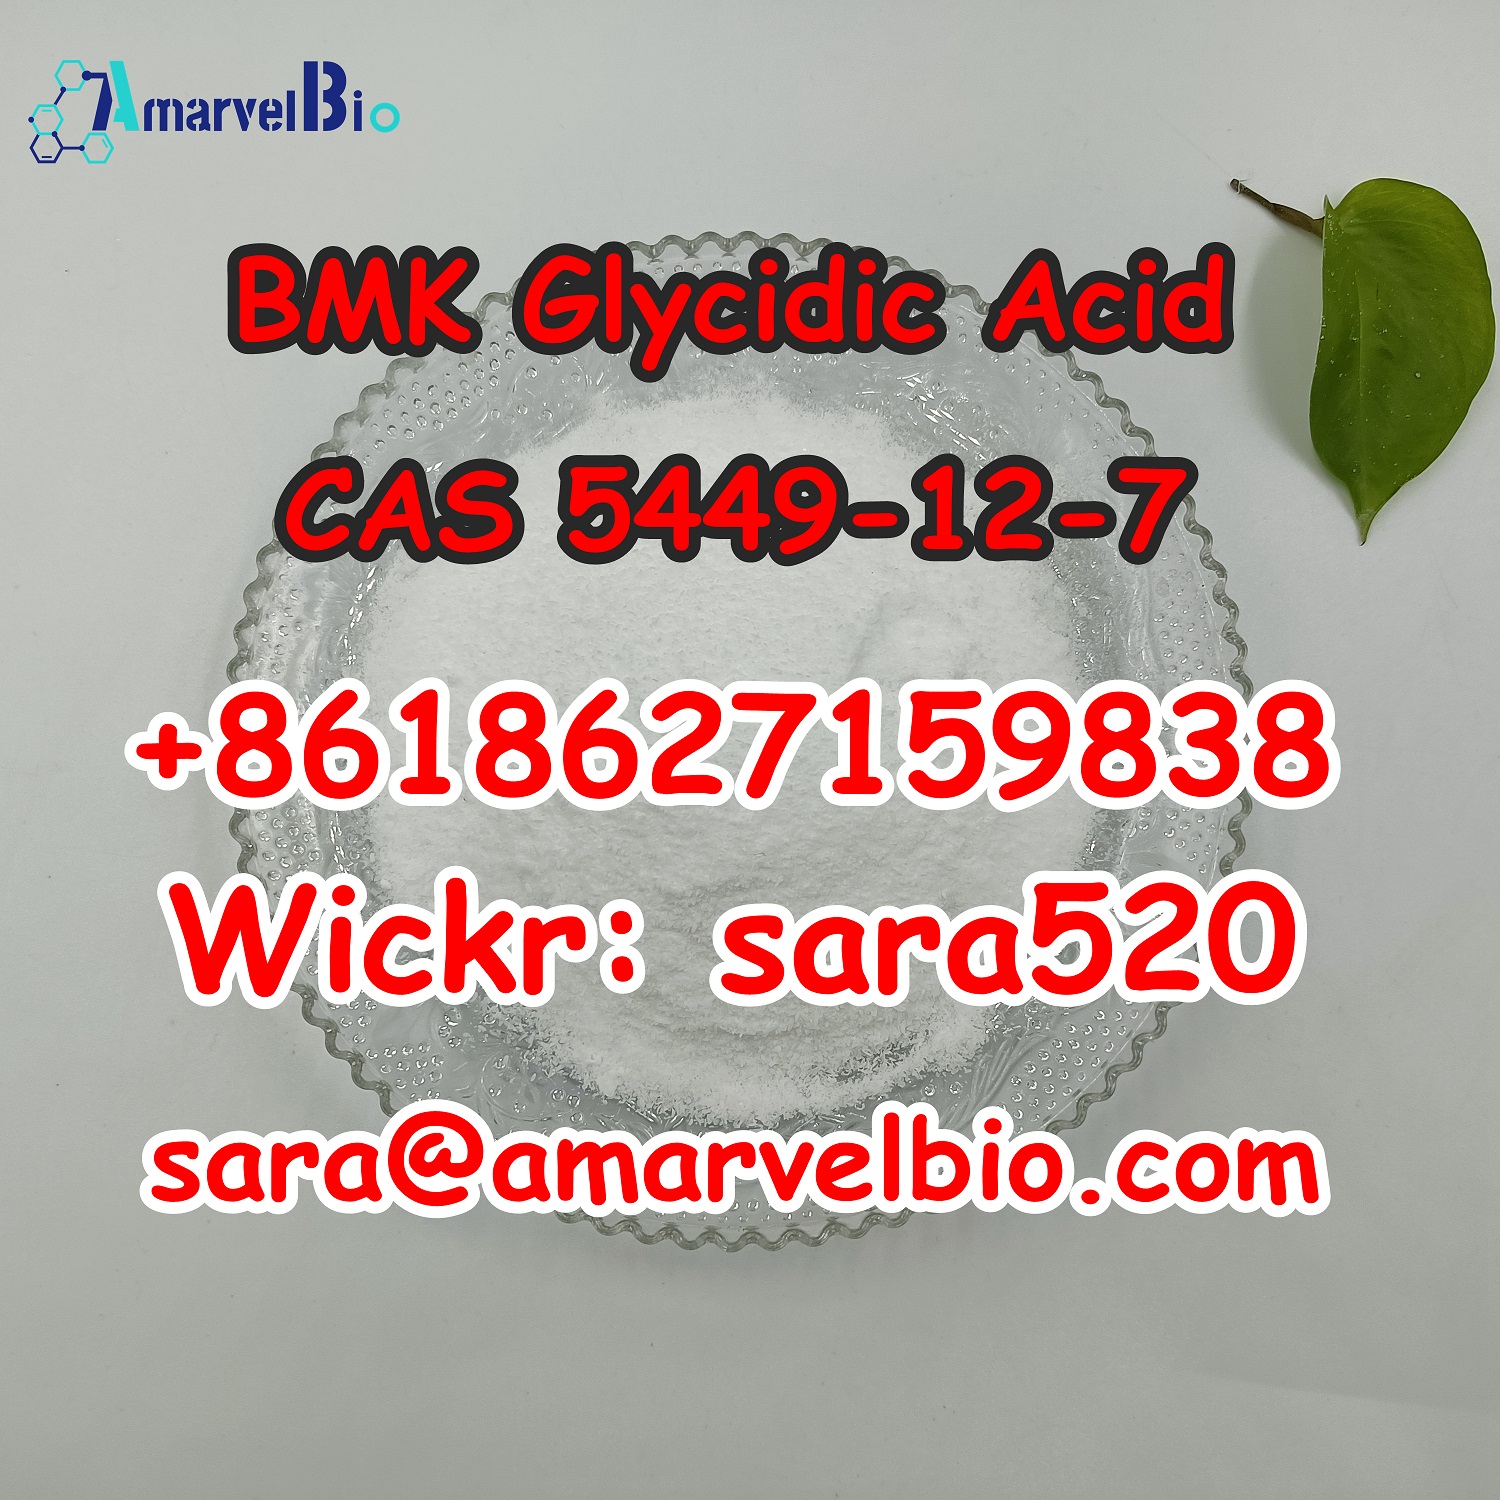 bmk powder cas CAS 5449-12-7